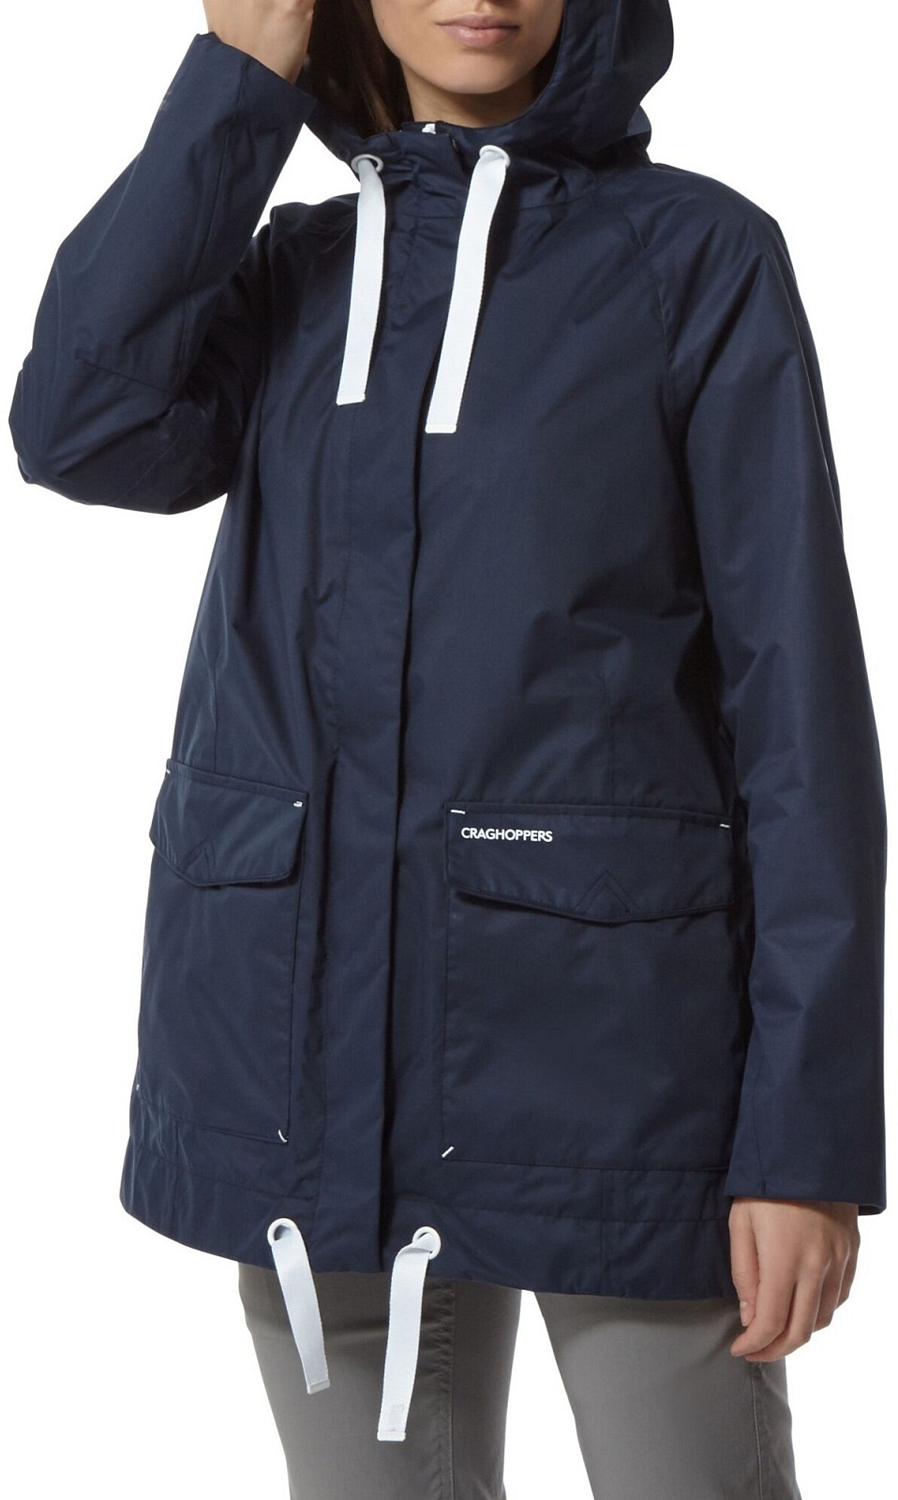 Куртка для активного отдыха Craghoppers Sorrento Blue Navy